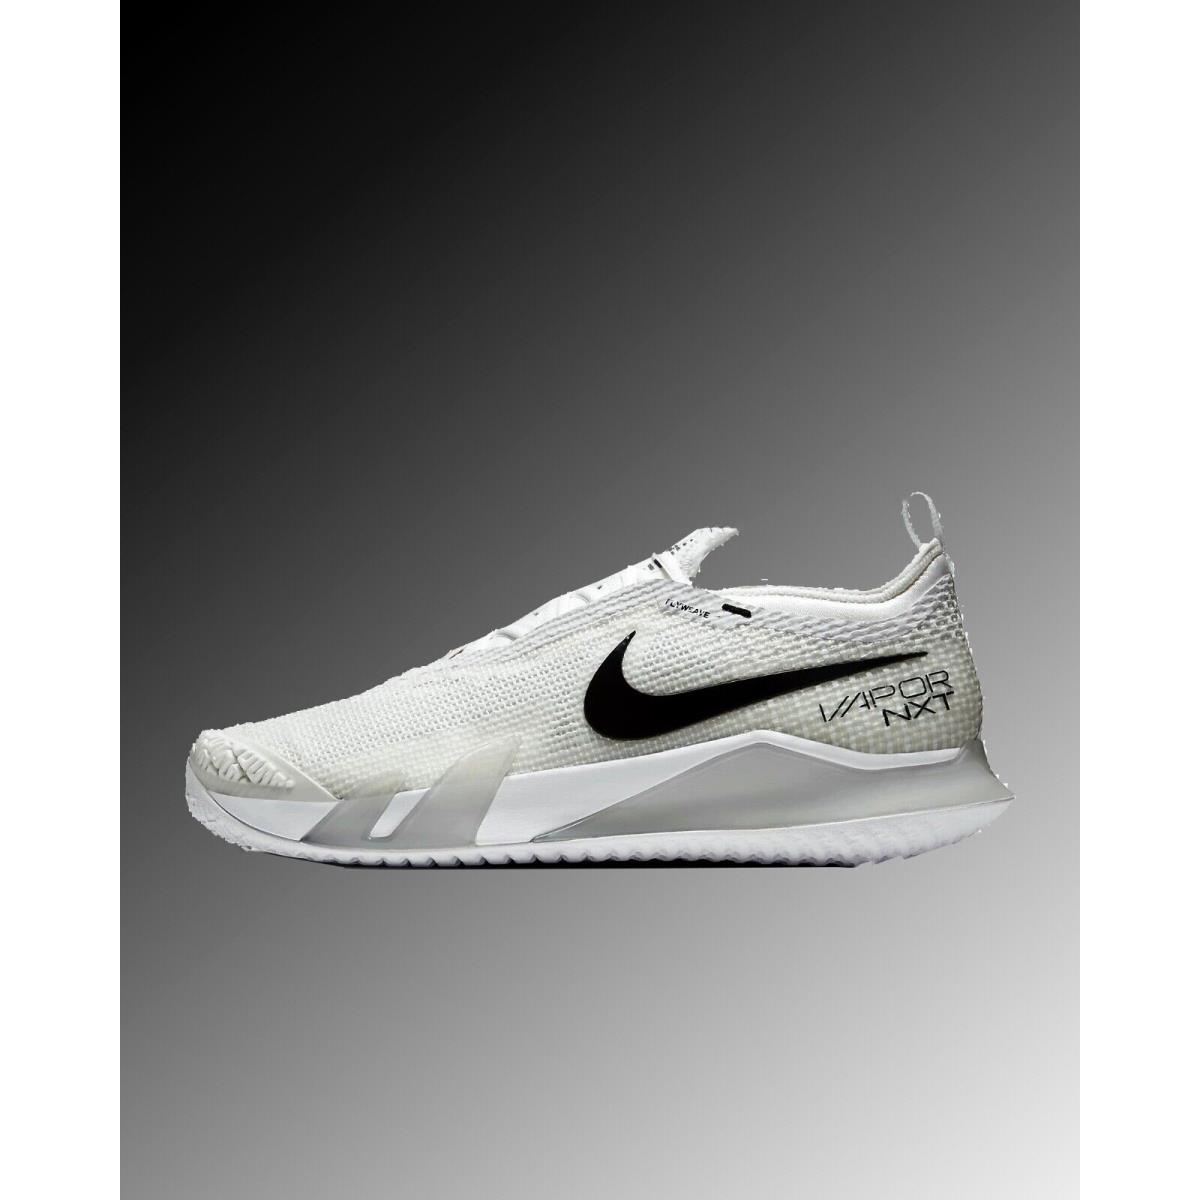 Nike React Vapor Nxt HC Tennis Shoes CV0724-101 White/grey/black Men Size 14